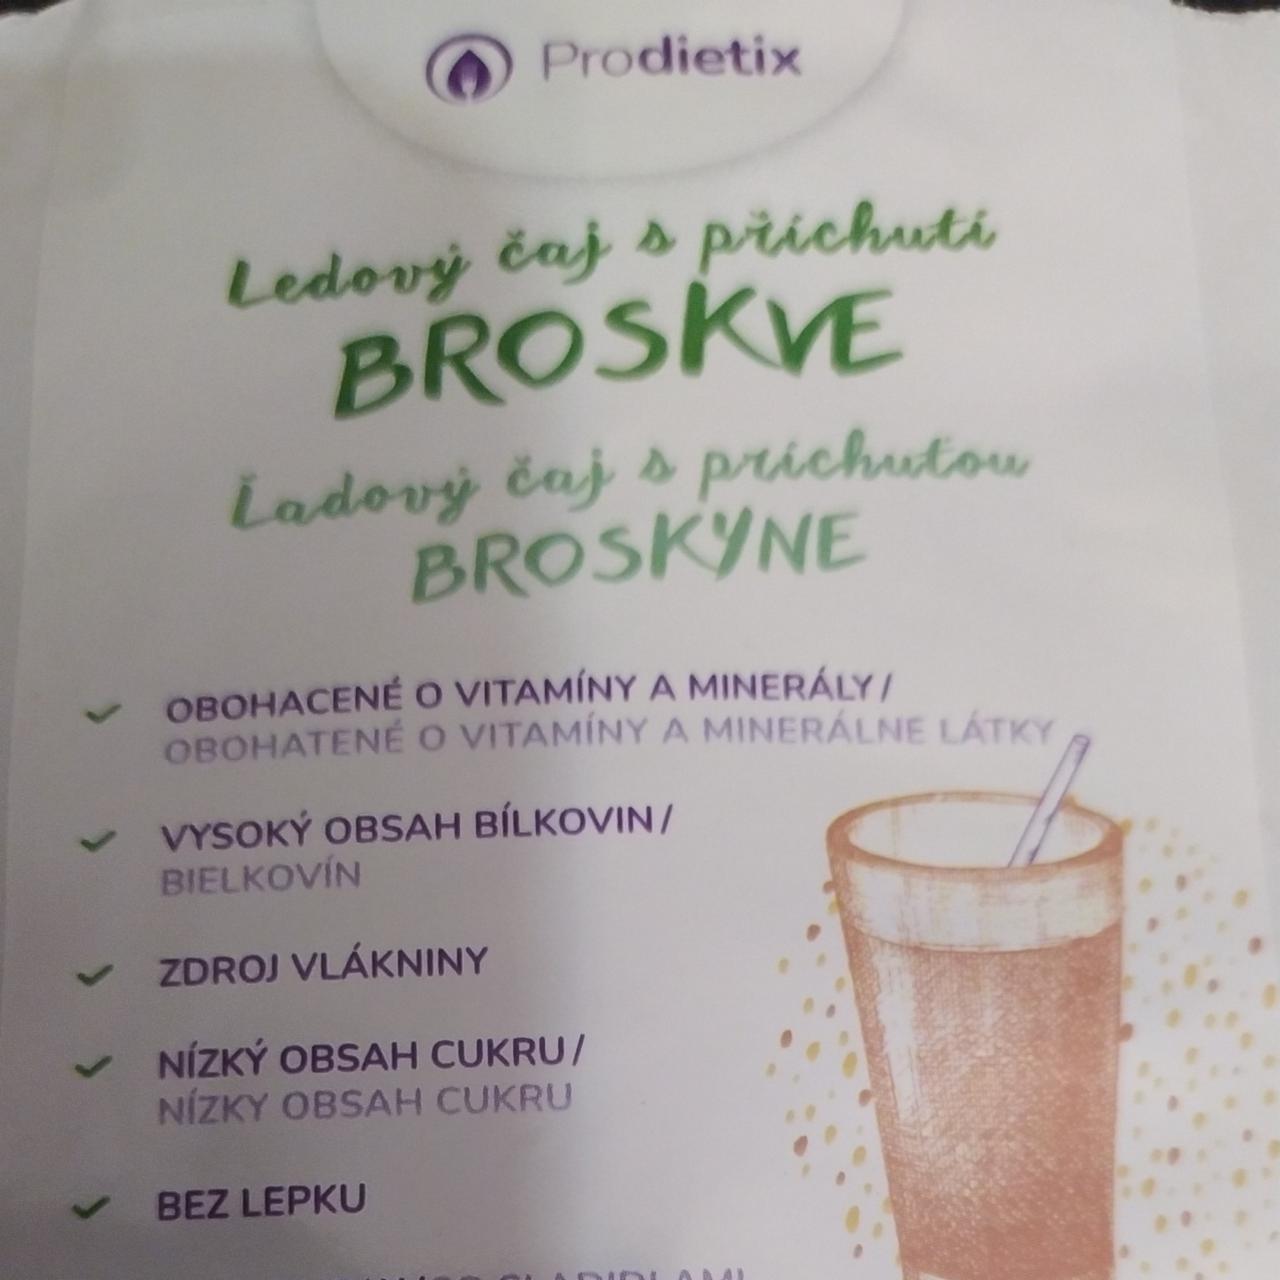 Fotografie - Ledový čaj s příchutí Broskve Prodietix